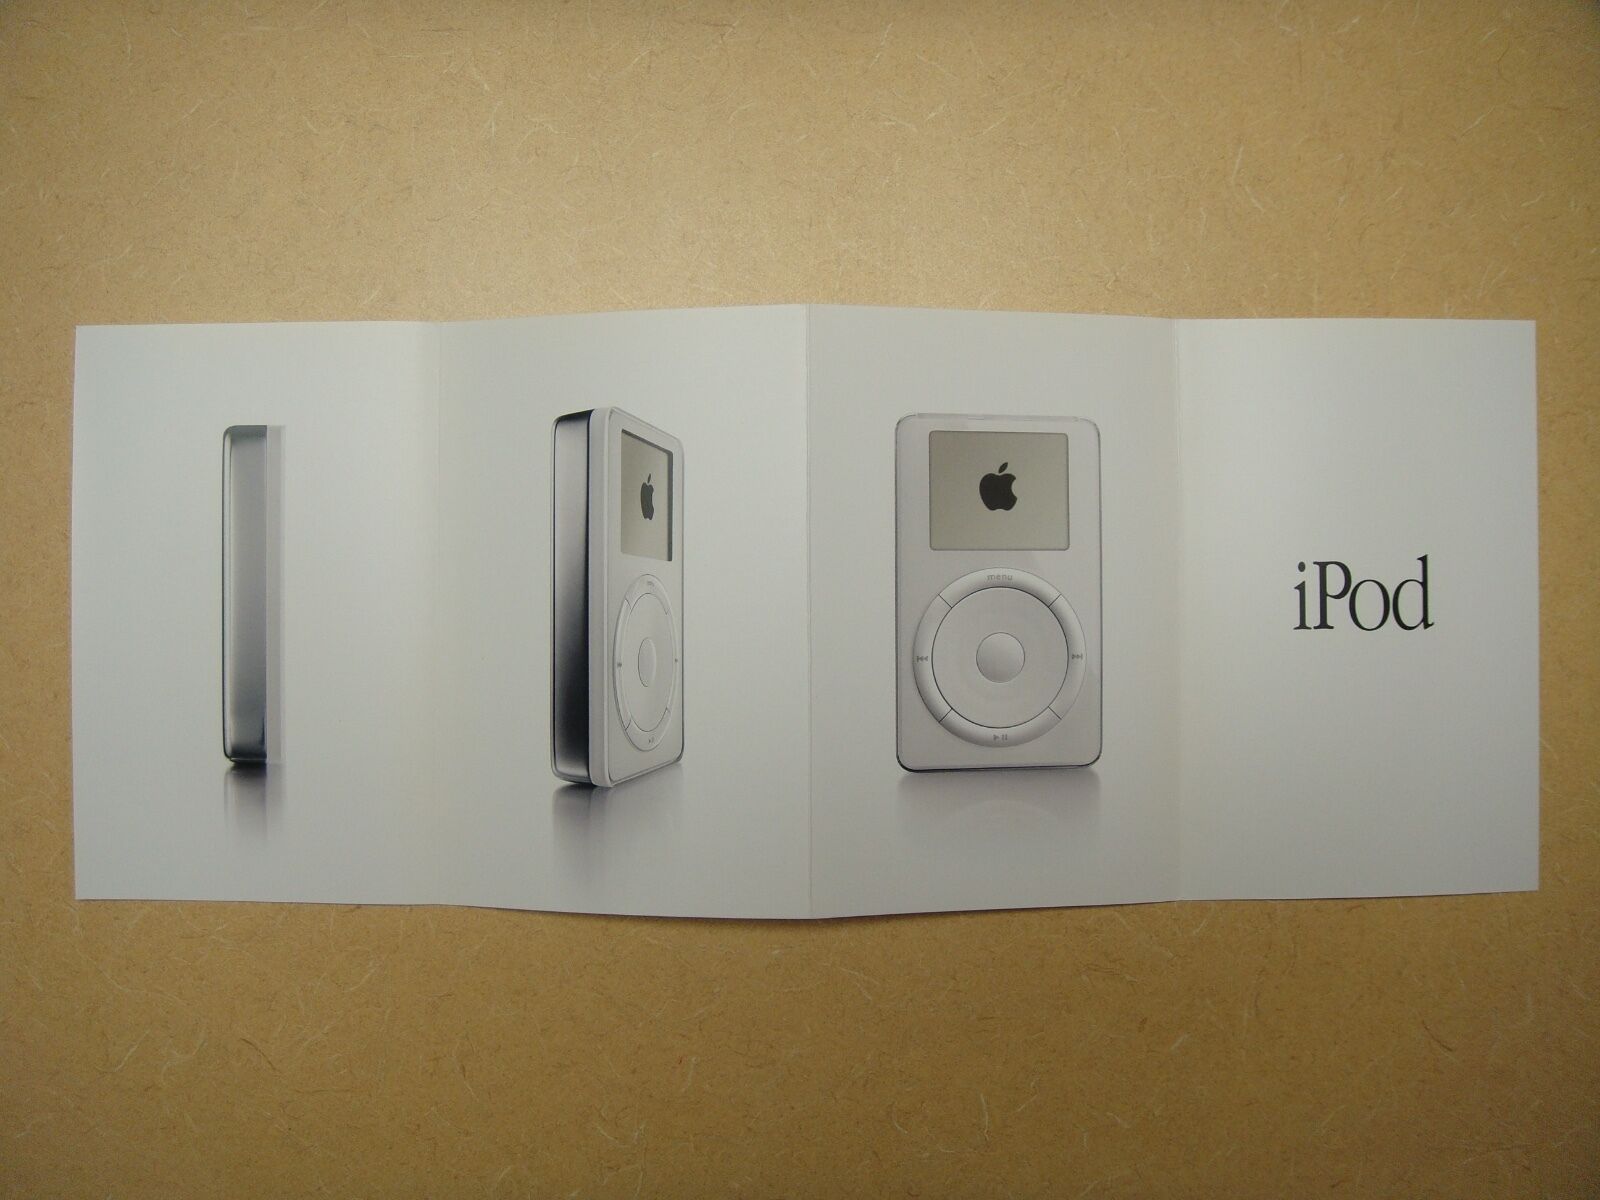 First 1st Gen iPod Brochure Oct 2001 - by Apple Computer - MINT Original 